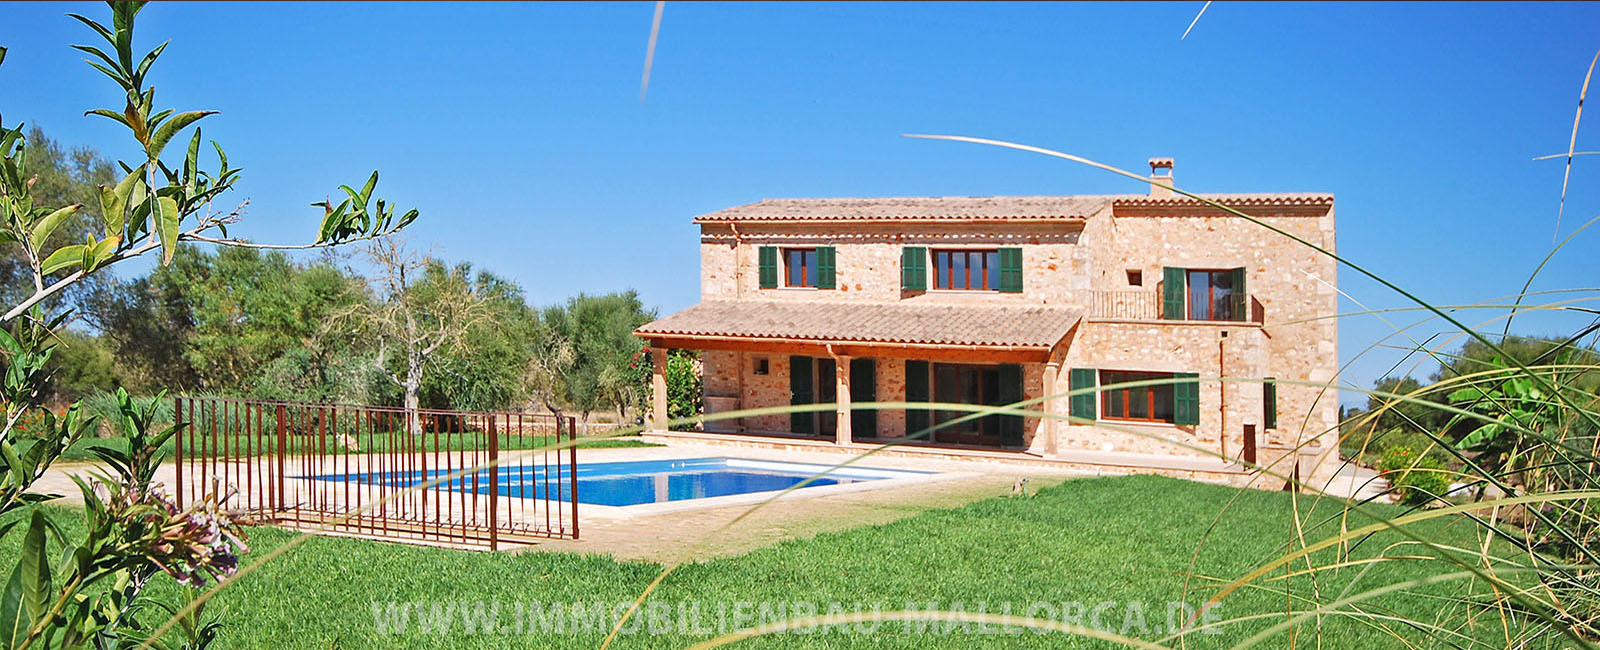 Immobilie Spanien Mallorca kaufen